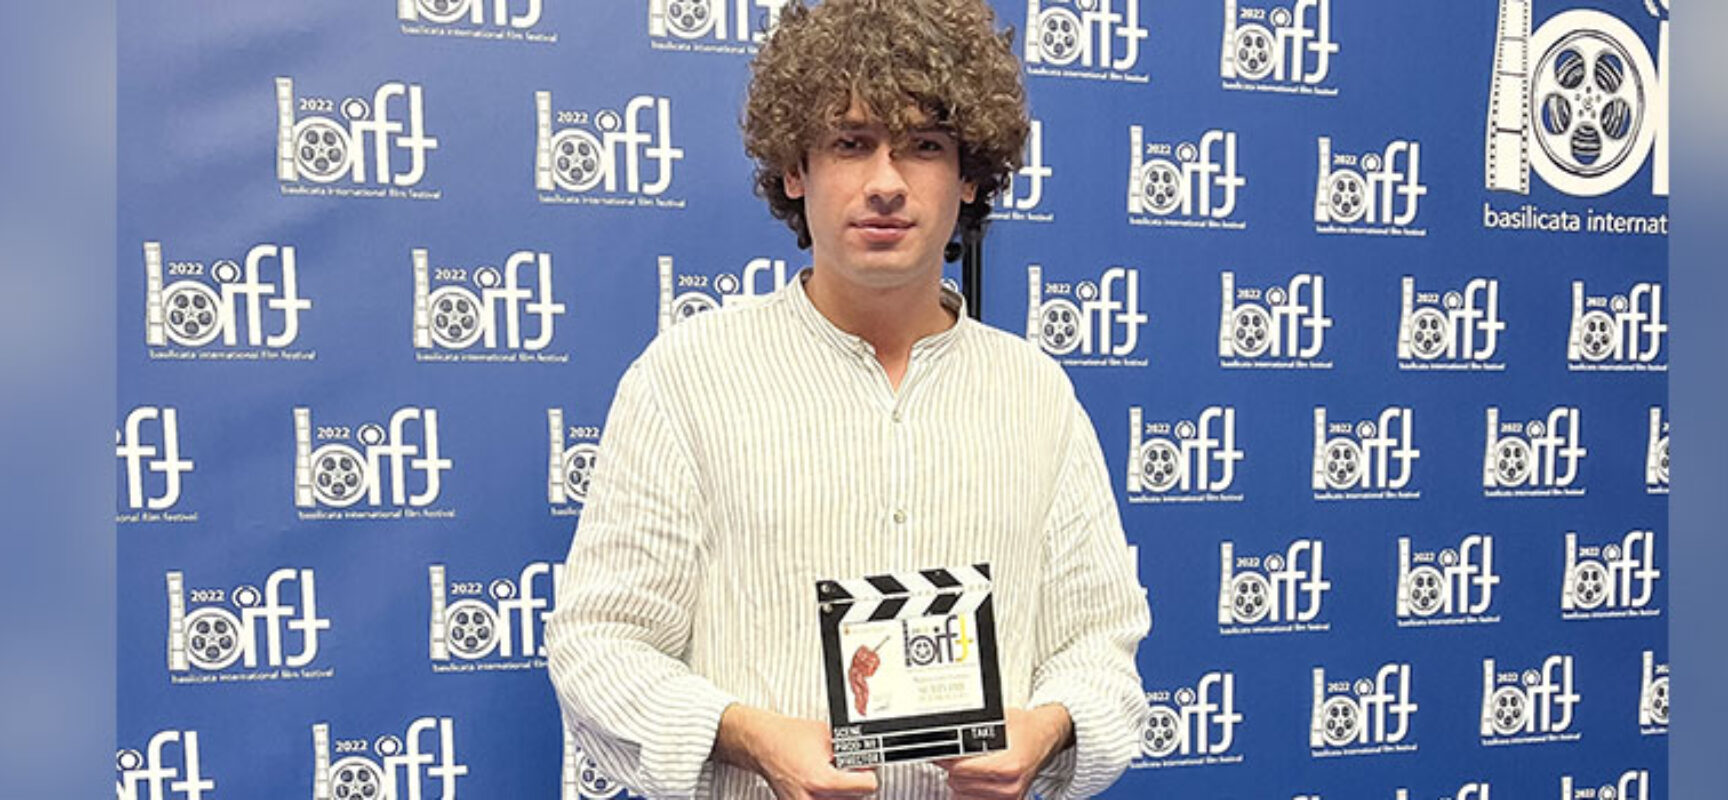 Al biscegliese Giuseppe de Candia il premio “Miglior Corto Giovani” al Basilicata Film Festival / VIDEO